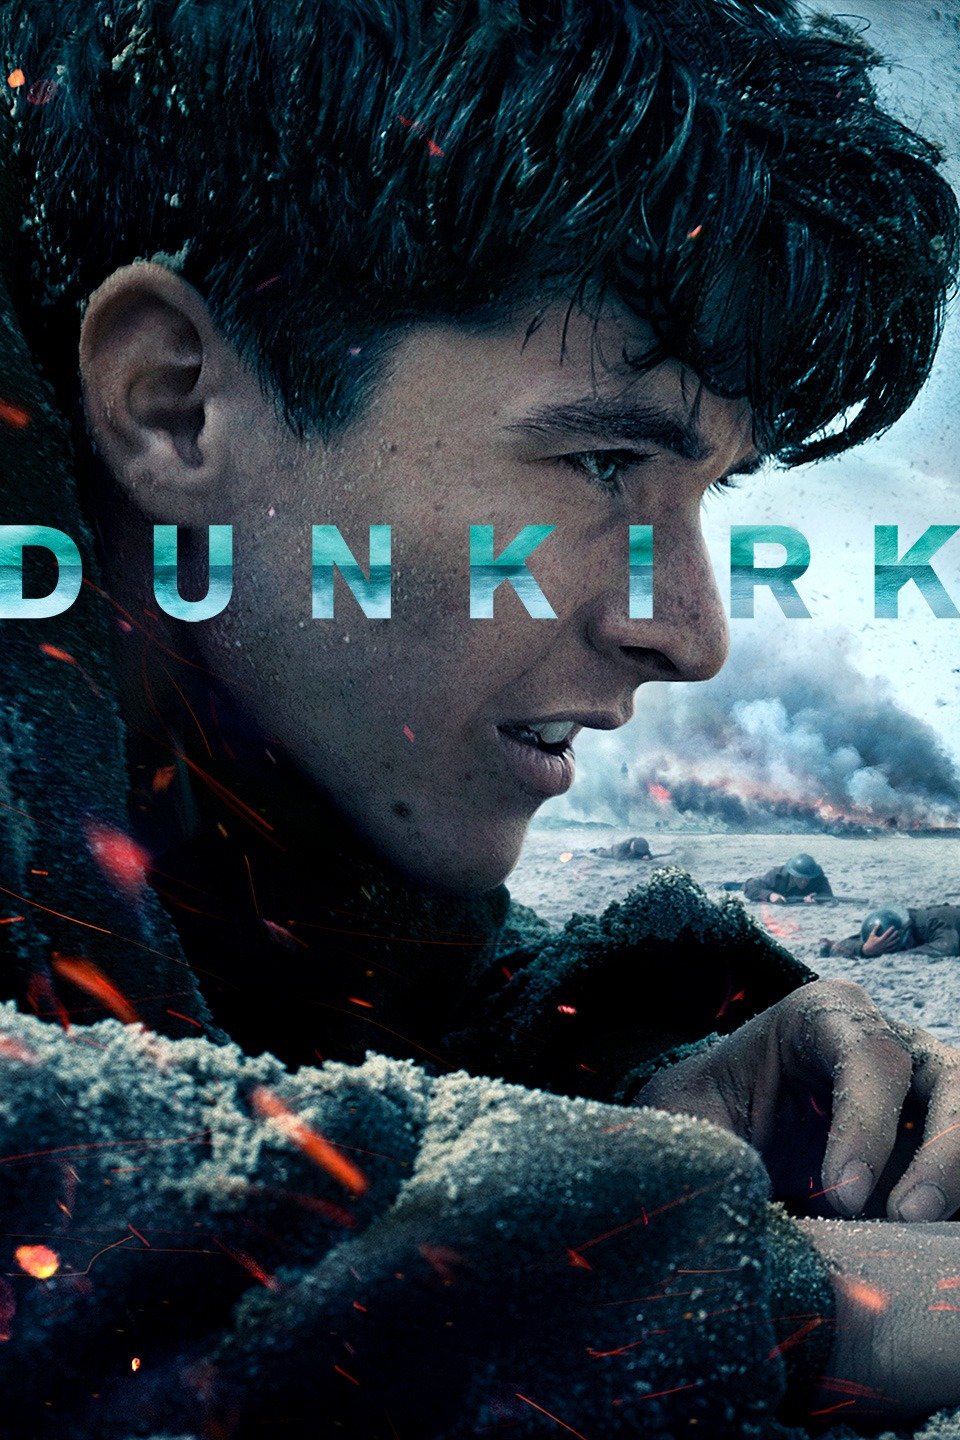 [MINI Super-HQ] Dunkirk (2017) ดันเคิร์ก [1080p] [IMAX Edition] [พากย์ไทย 5.1 + เสียงอังกฤษ DTS] [BrRip.DTS.x264] [บรรยายไทย + อังกฤษ] [เสียงไทย + ซับไทย] [ONE2UP]